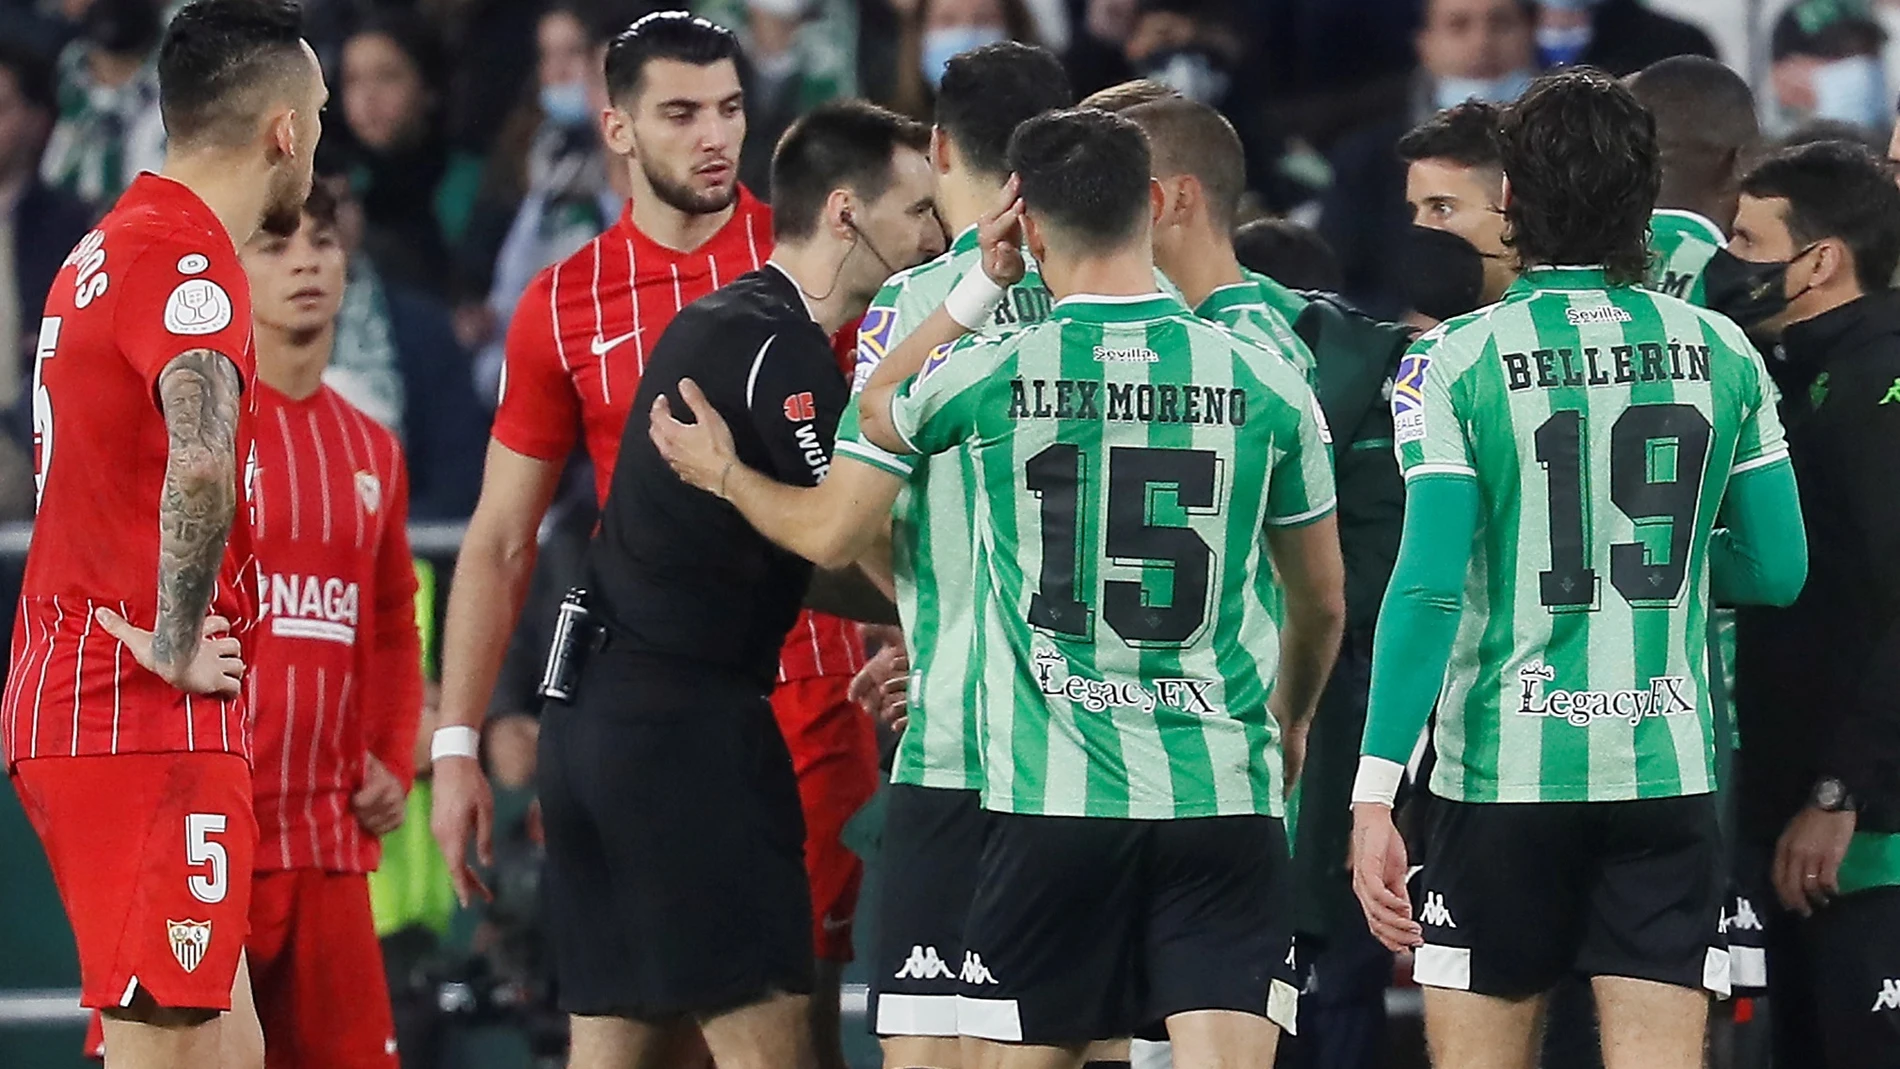 El Betis-Sevilla se disputará a las 16:00 horas y a puerta cerrada tras suspenderse este sábado por la agresión a Joan Jordán